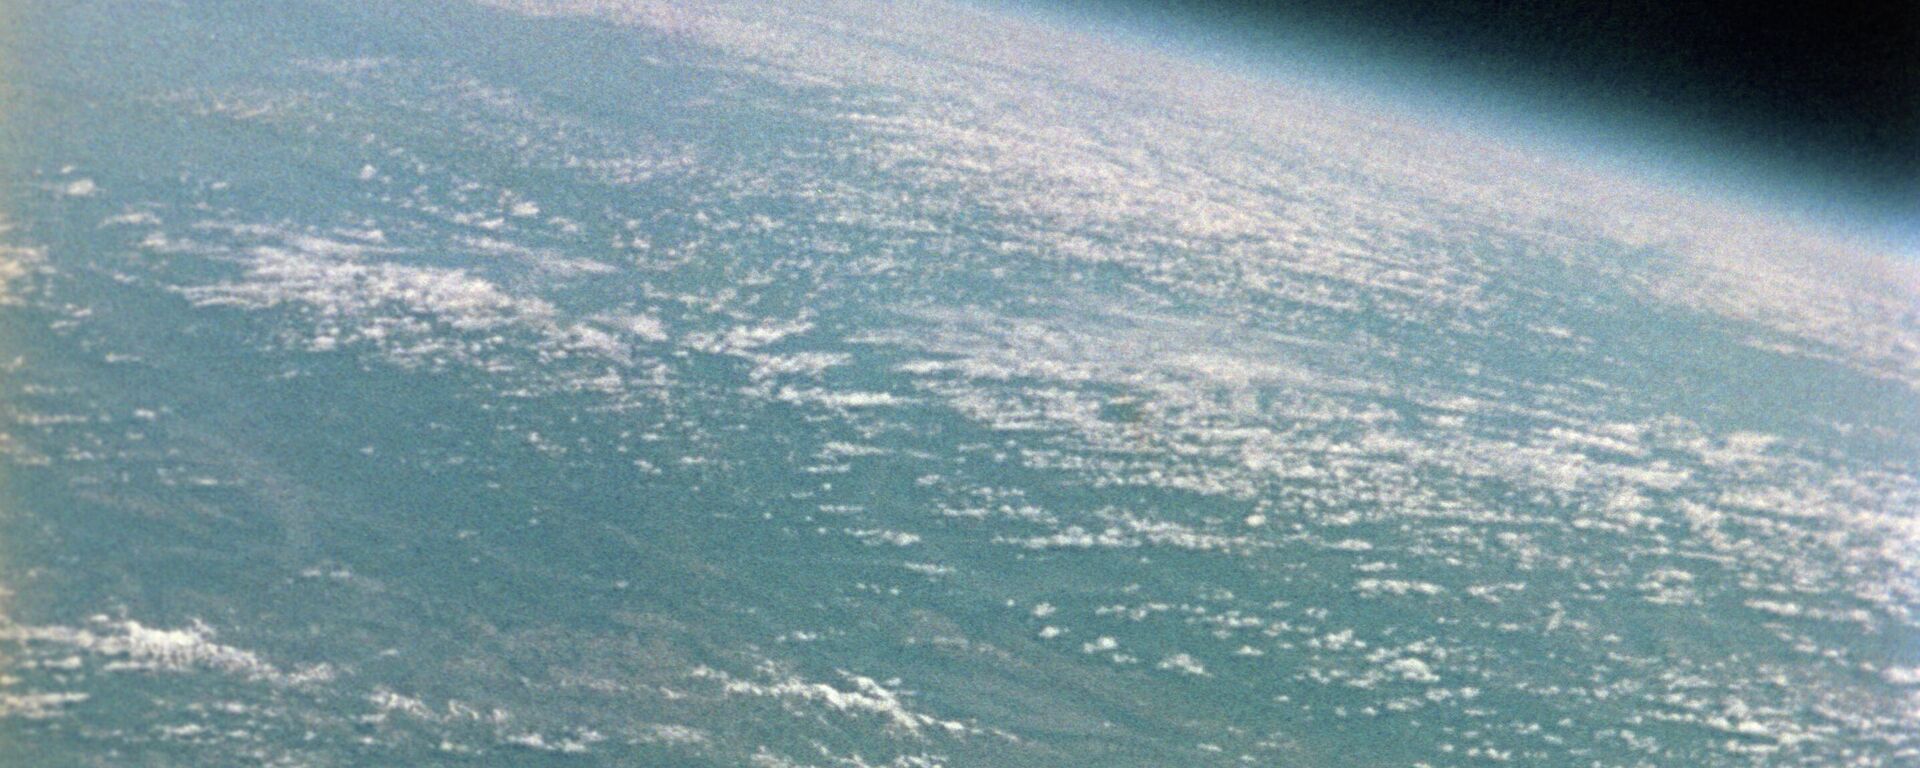 Soviyet kozmonot German Titov'un uzaydan çektiği Dünya görüntüsü. - Sputnik Türkiye, 1920, 31.12.2021